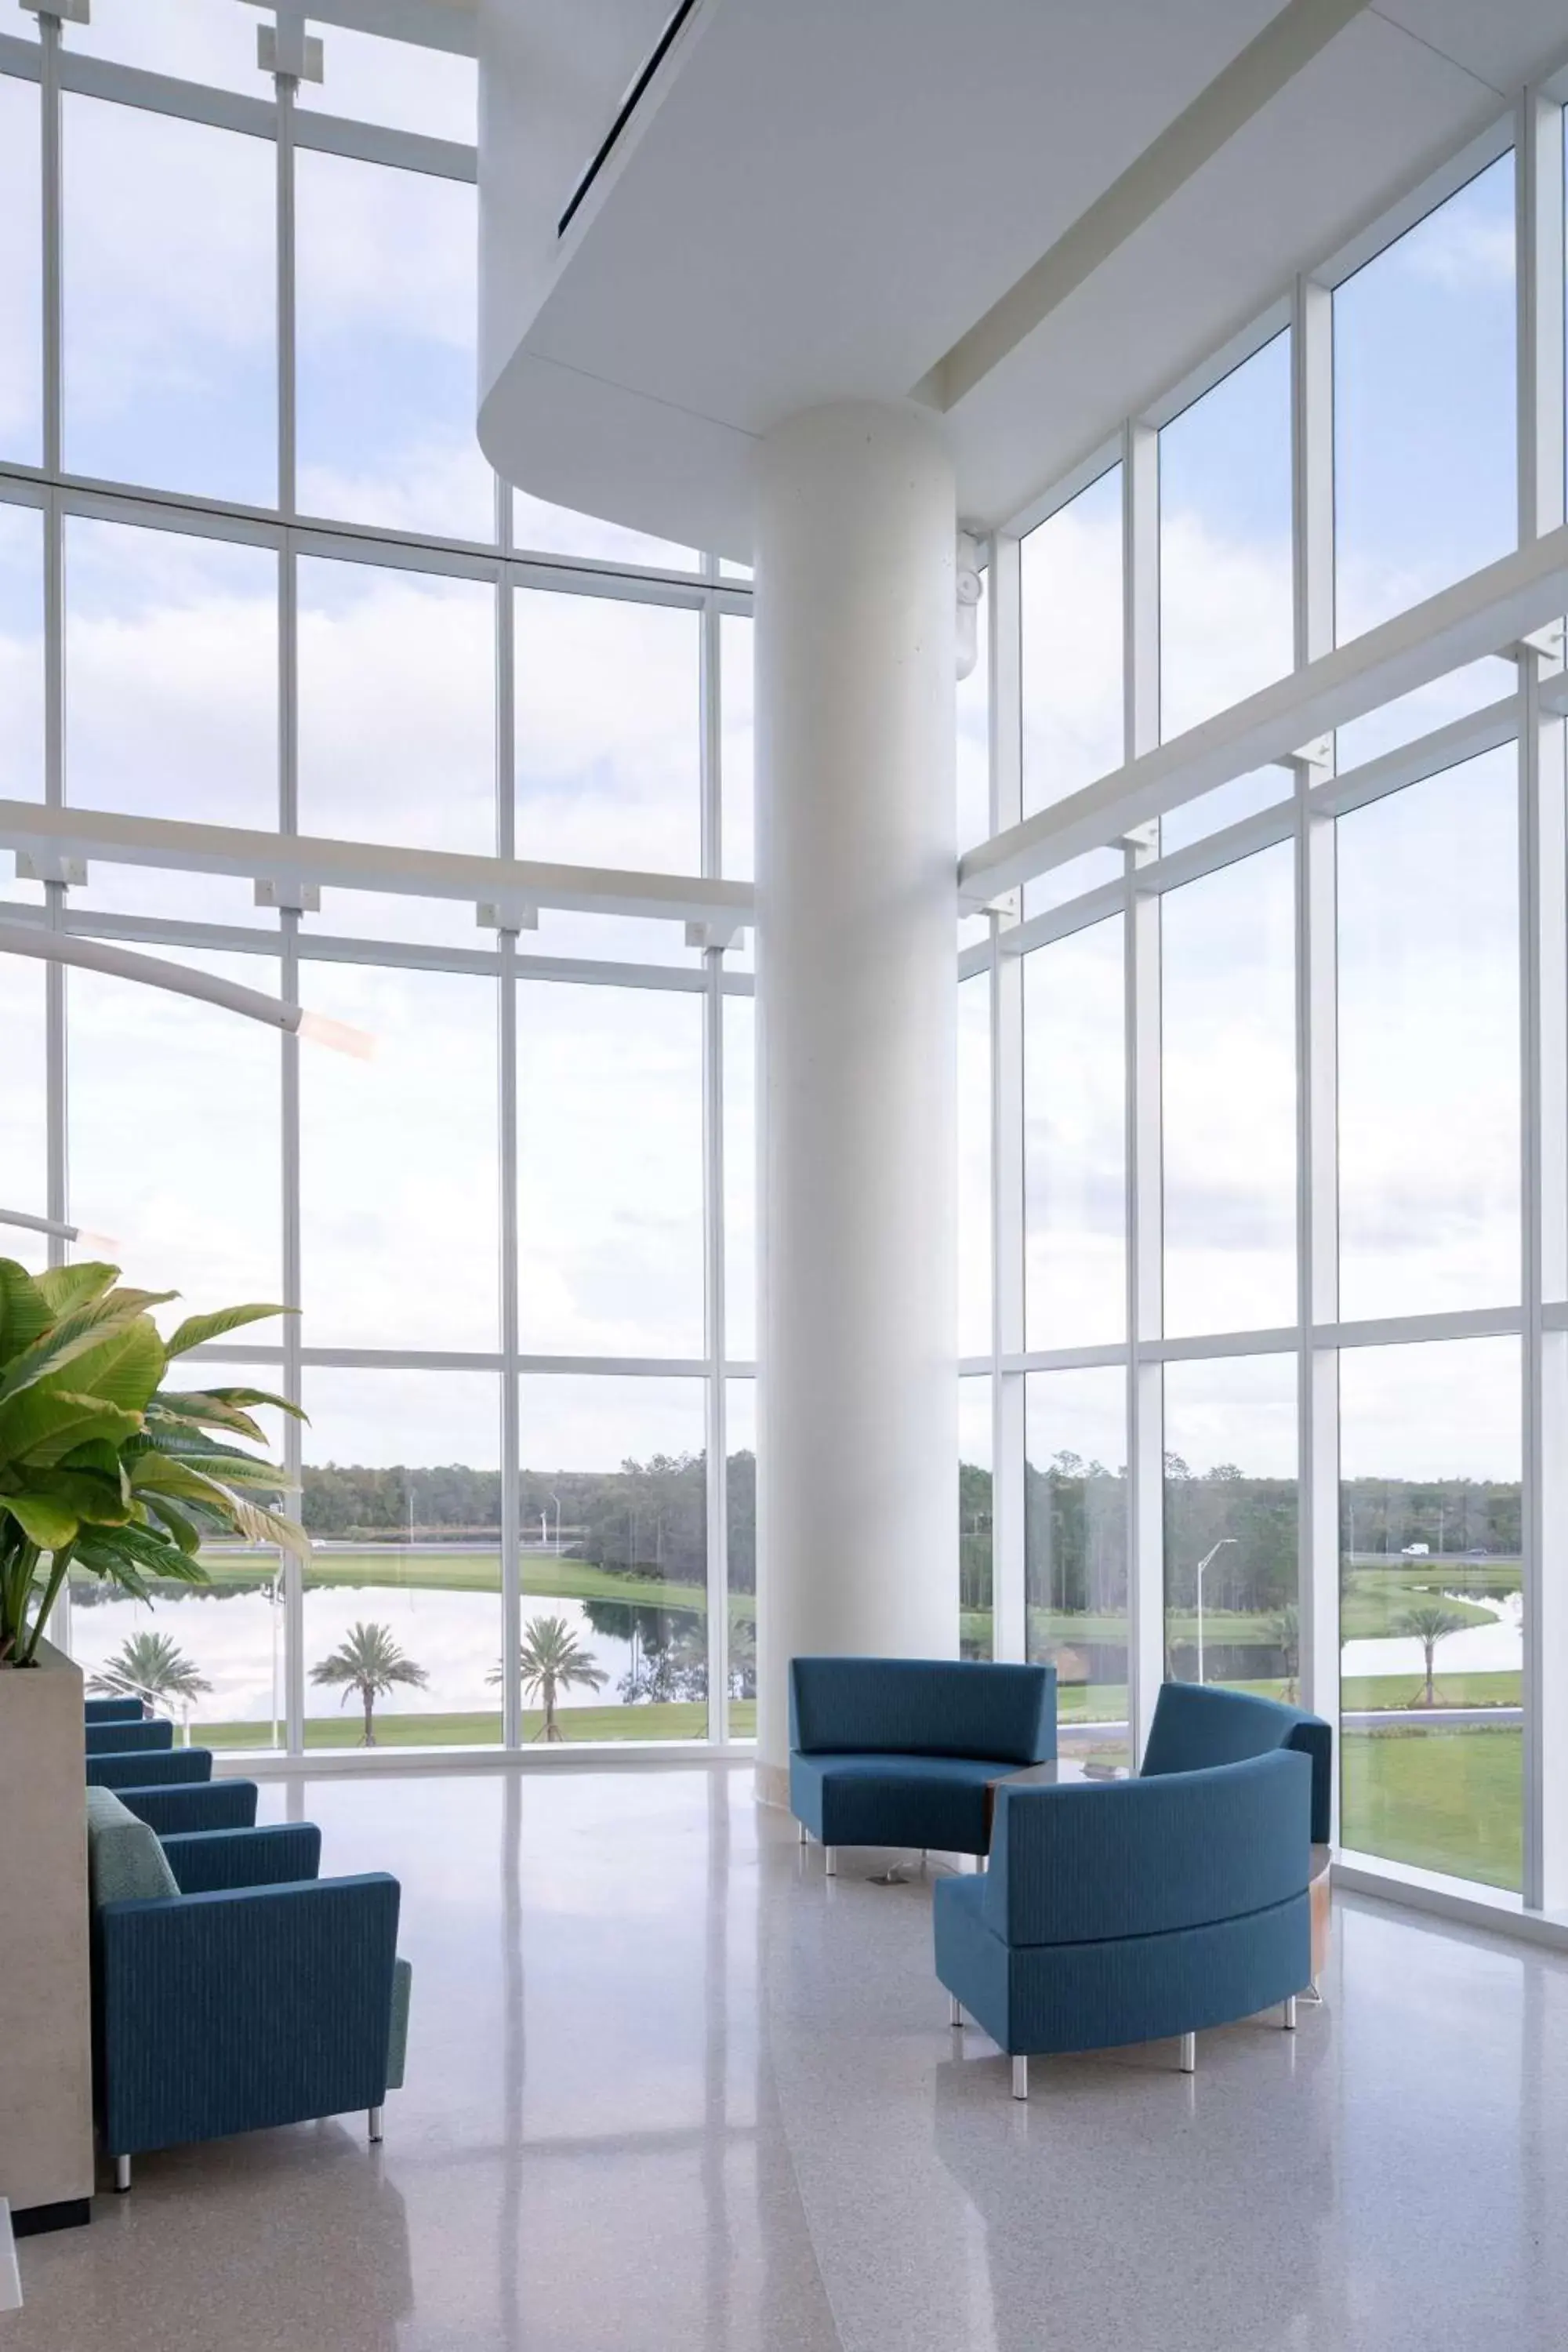 Lobby or reception, Lobby/Reception in Hyatt Regency Orlando International Airport Hotel